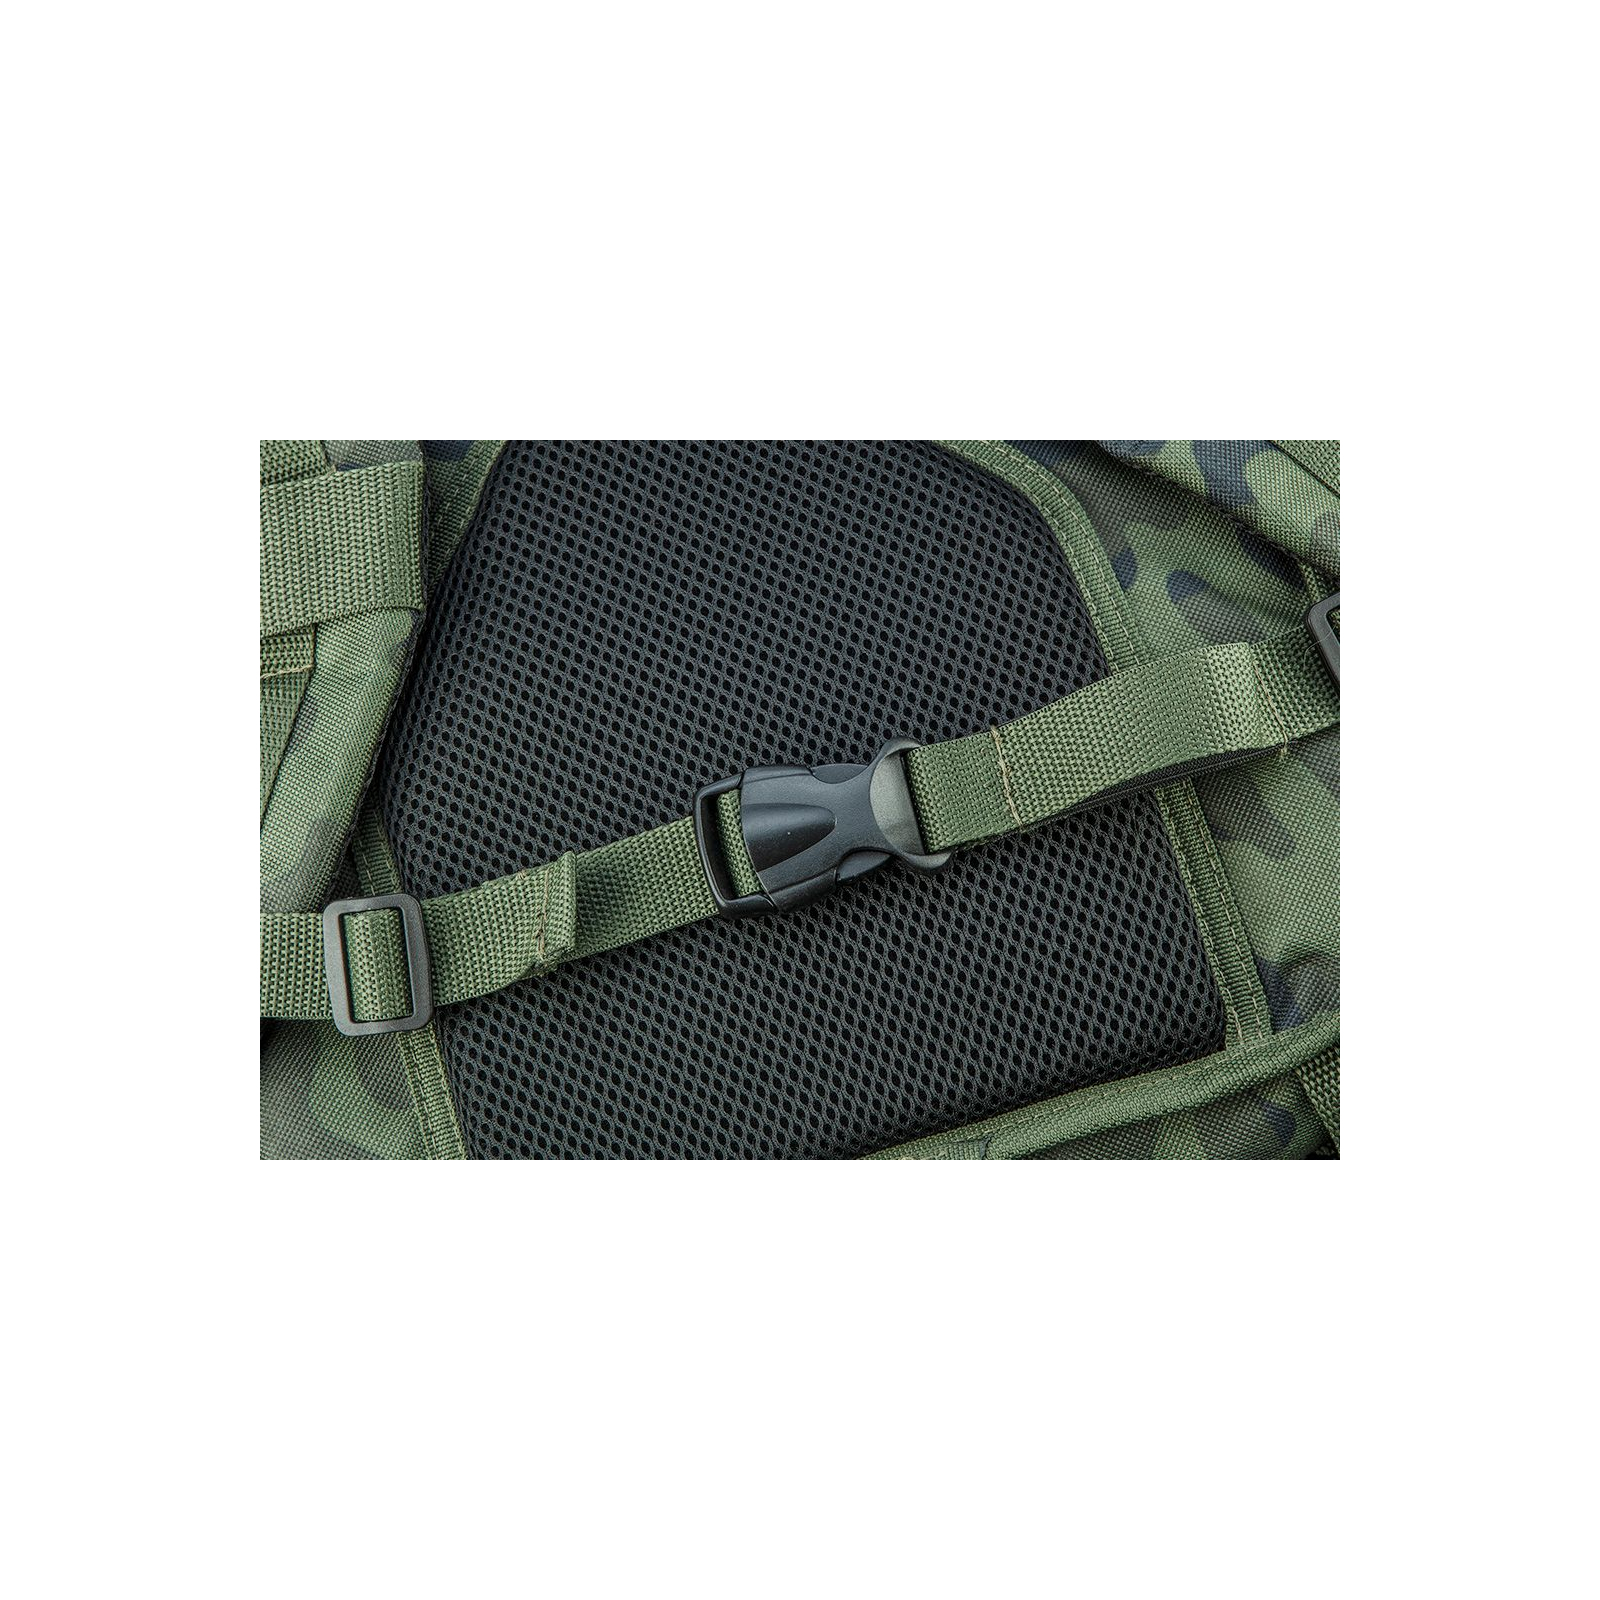 Сумка для инструмента Neo Tools рюкзак Camo, 30л, 50х29.5х19см, полиэстер 600D, усиленный, камуфляж (84-321) изображение 10